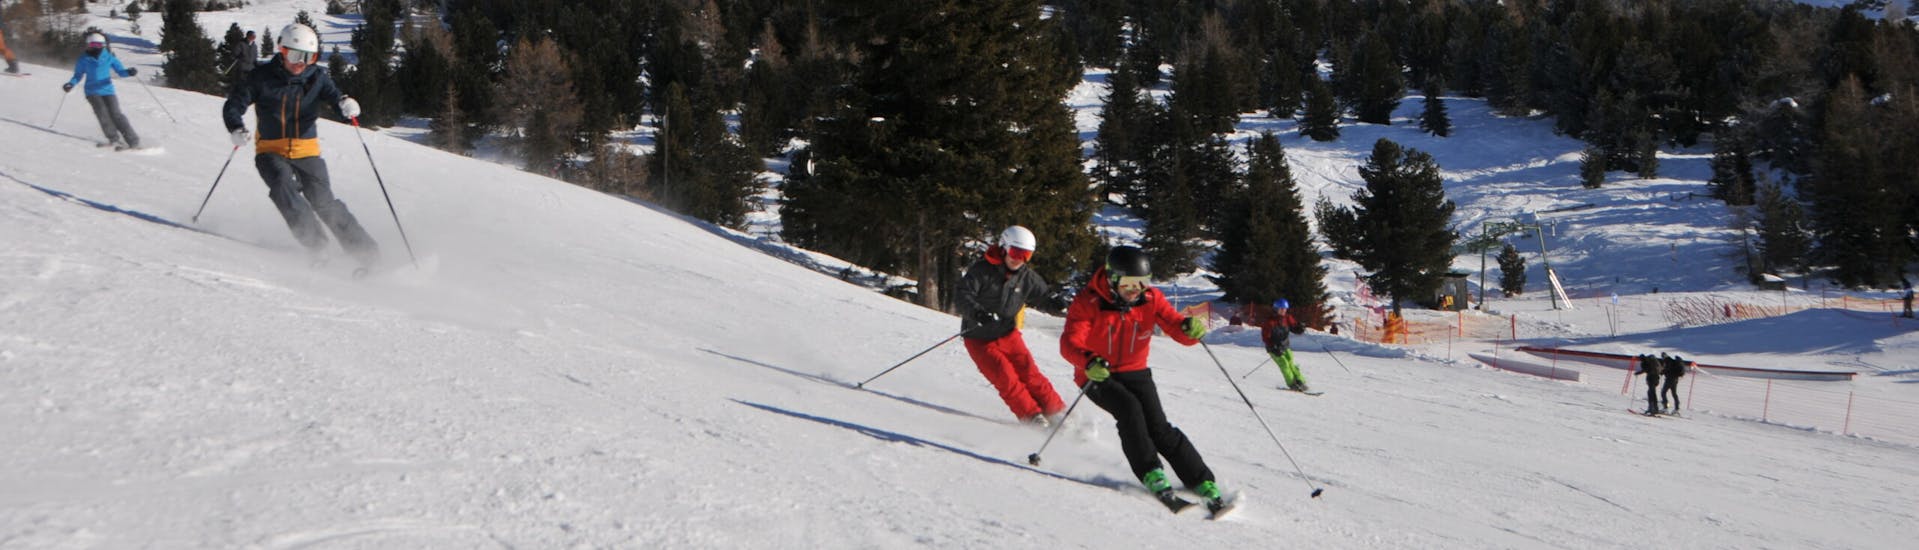 Lezioni private di sci per adulti per tutti i livelli con Ski- & Snowboardschule Innsbruck.